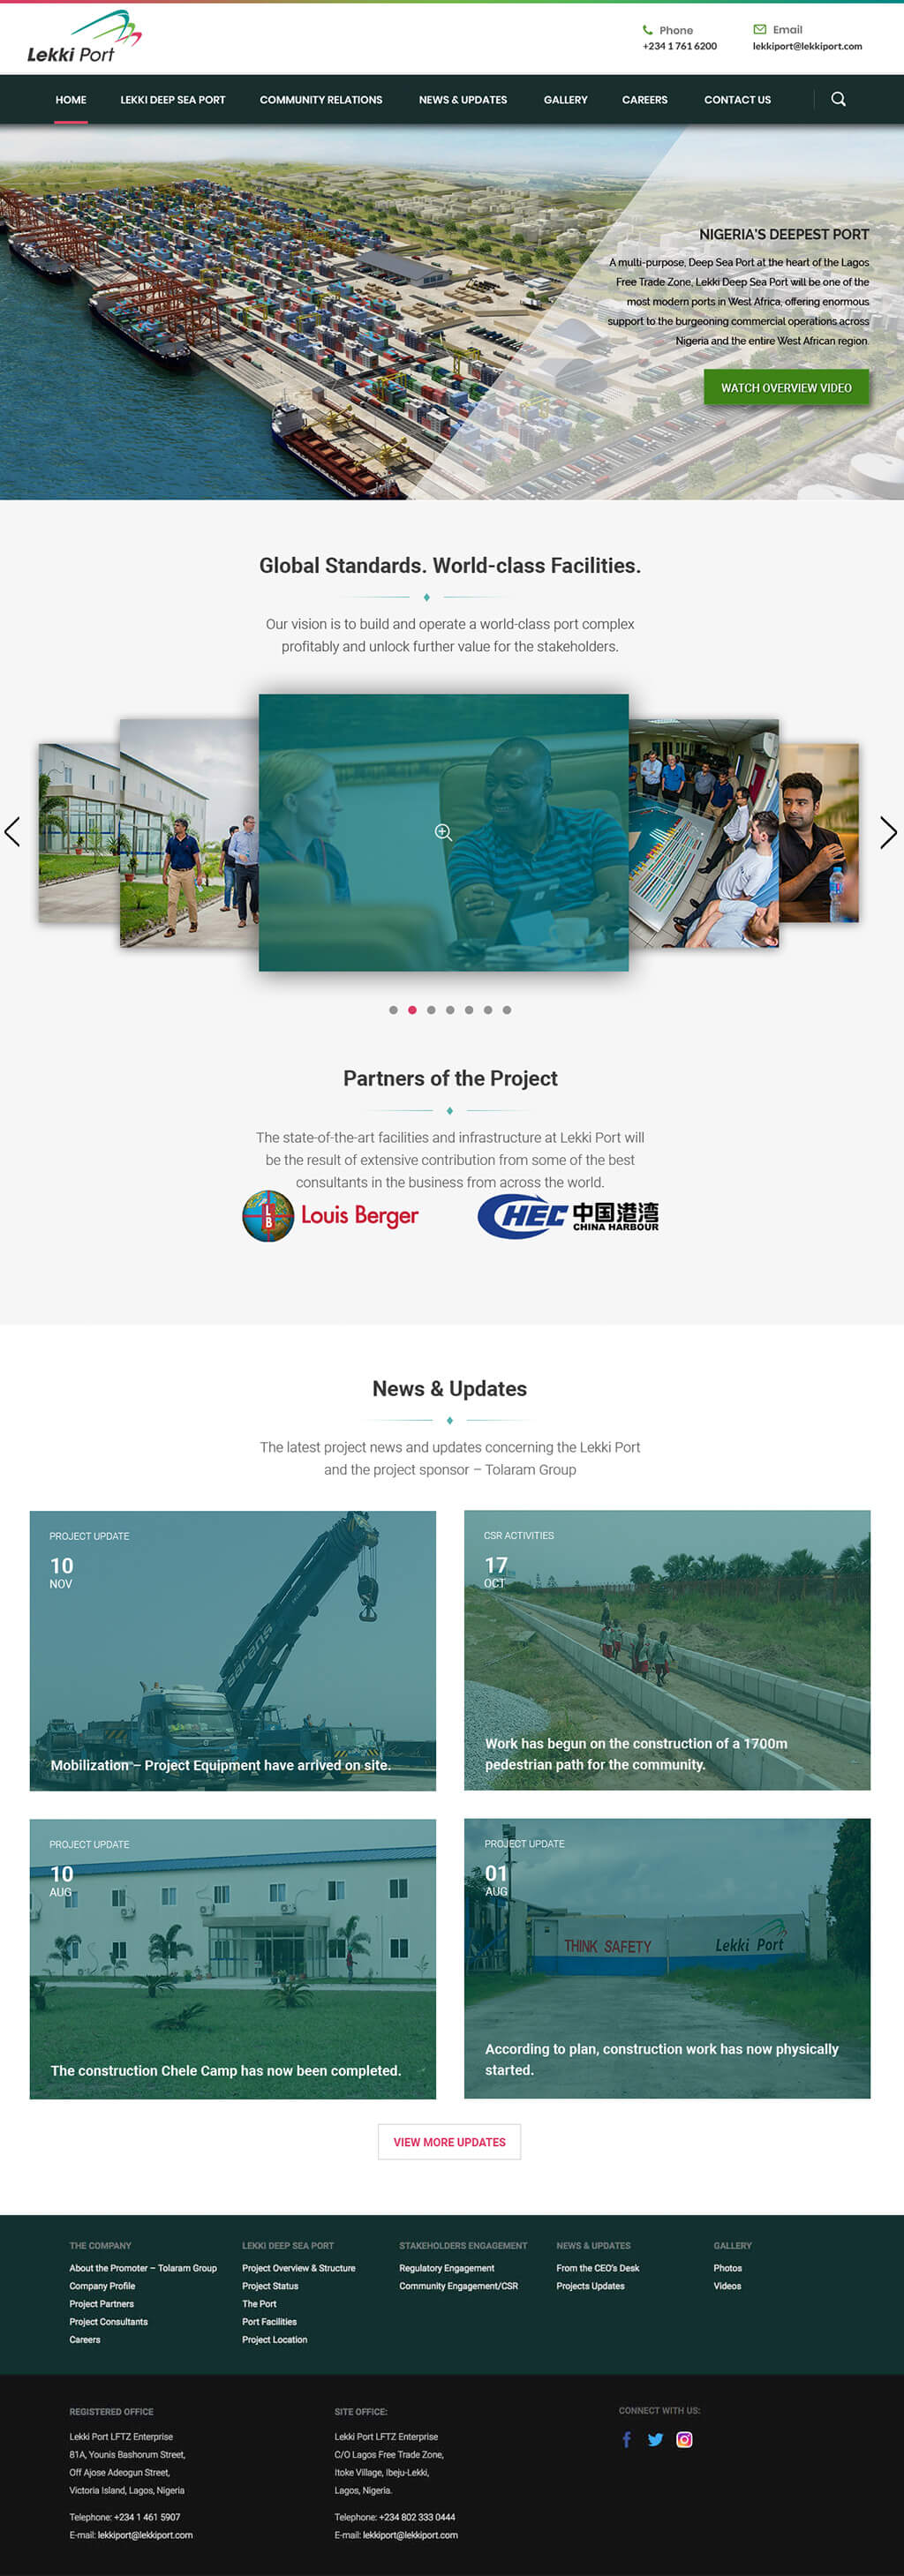 Lekki-Port-website-design-project-page-1